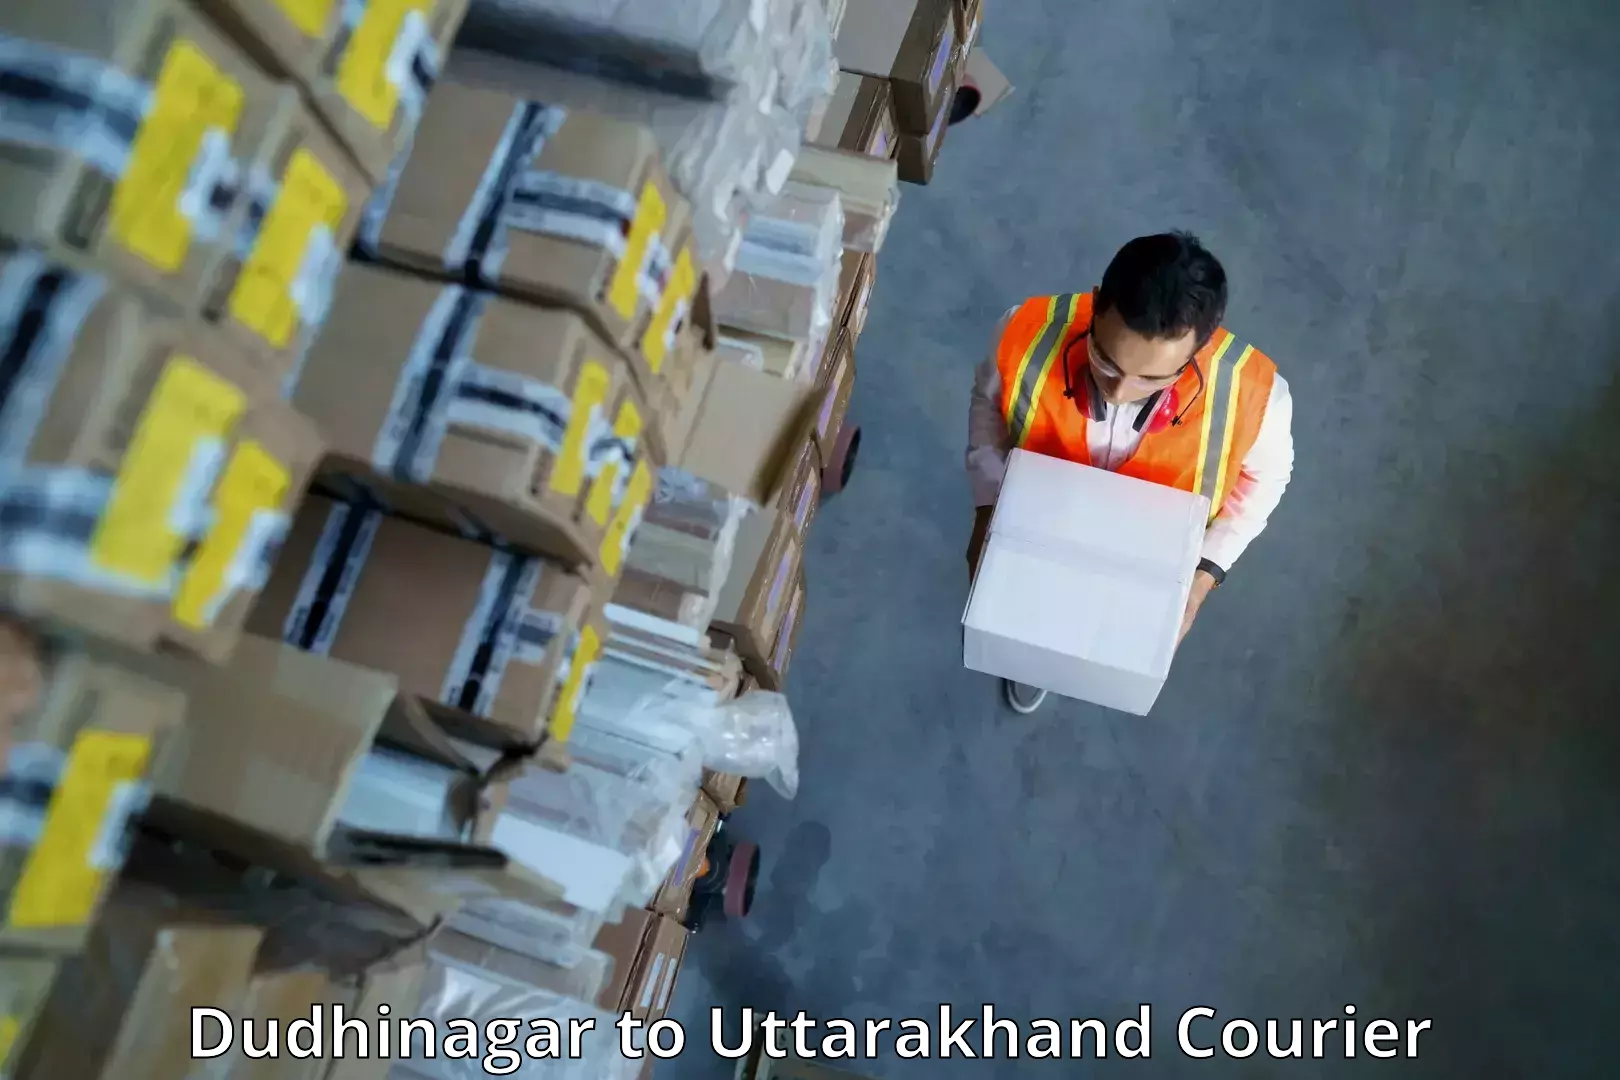 Global shipping solutions Dudhinagar to Ramnagar